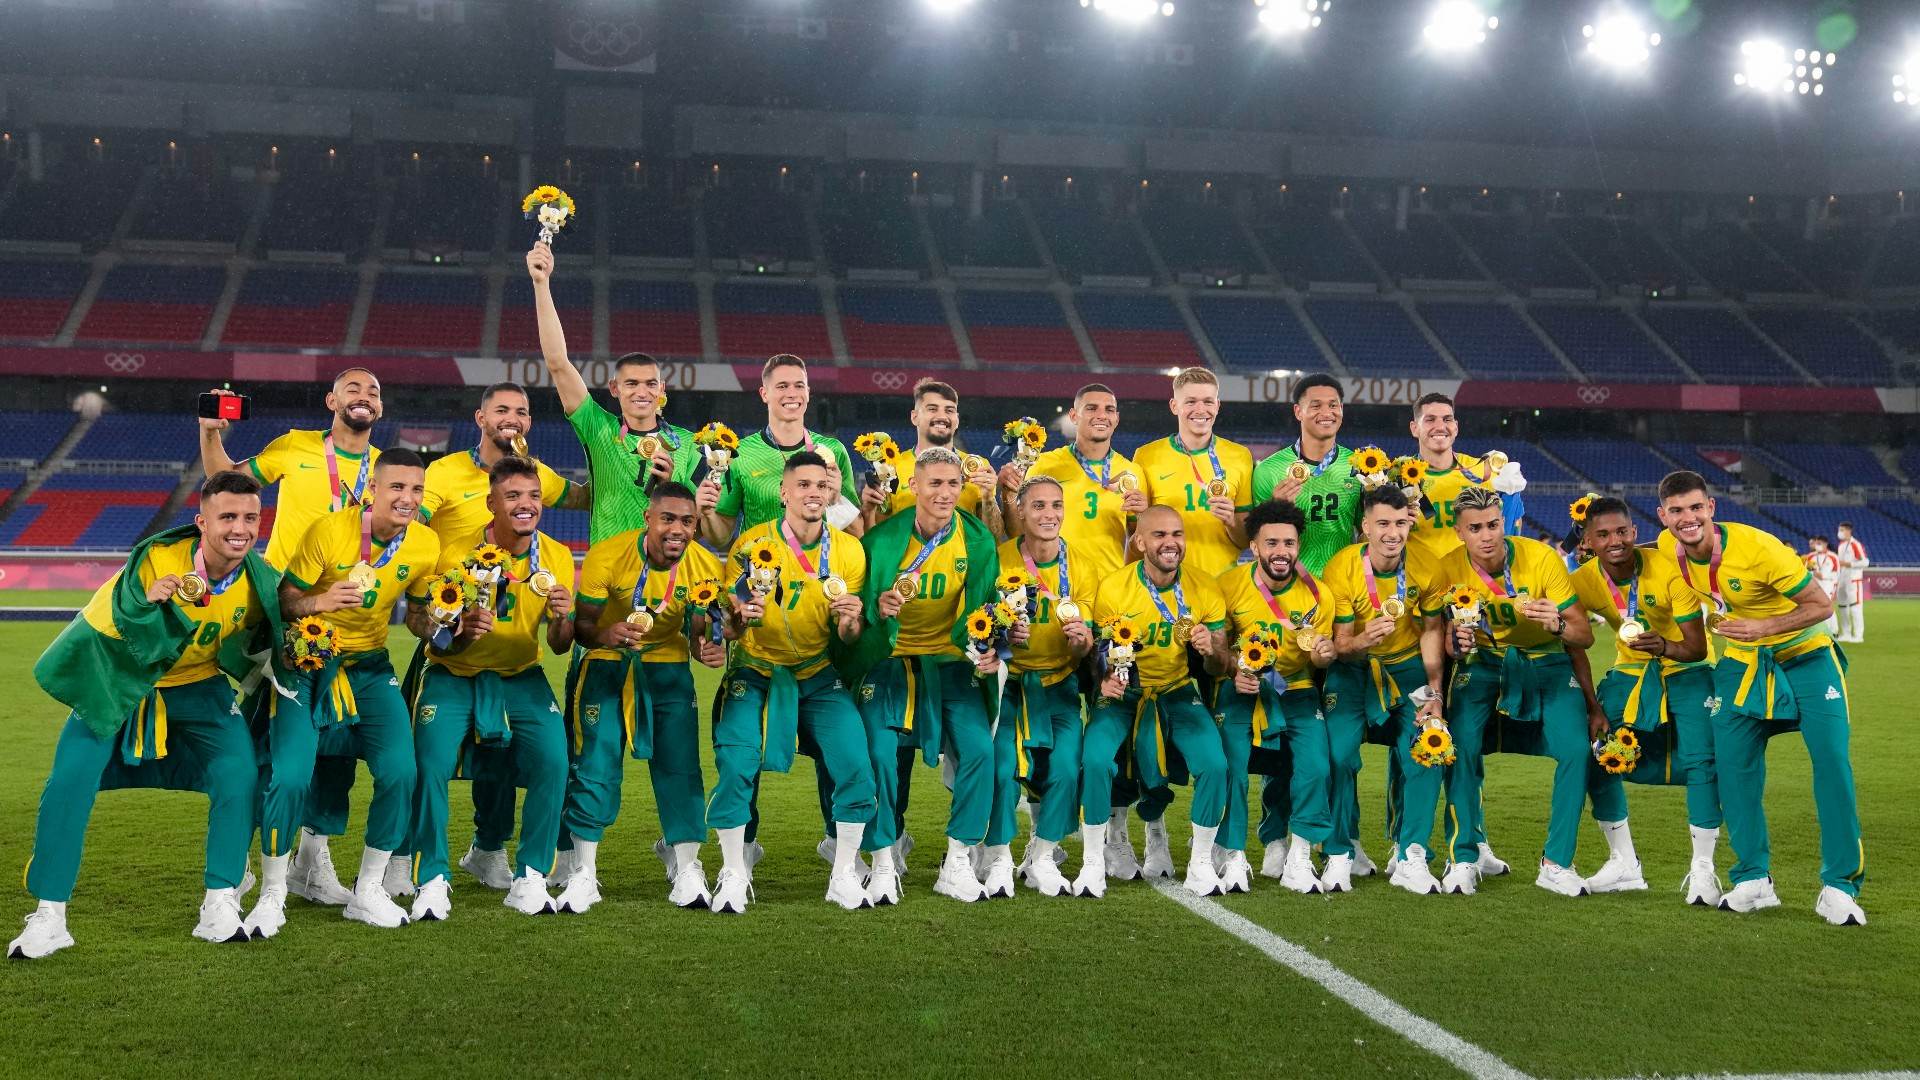 Após 62 anos de jejum, Brasil conquista ouro no futebol nos Jogos de 2016 e 2020